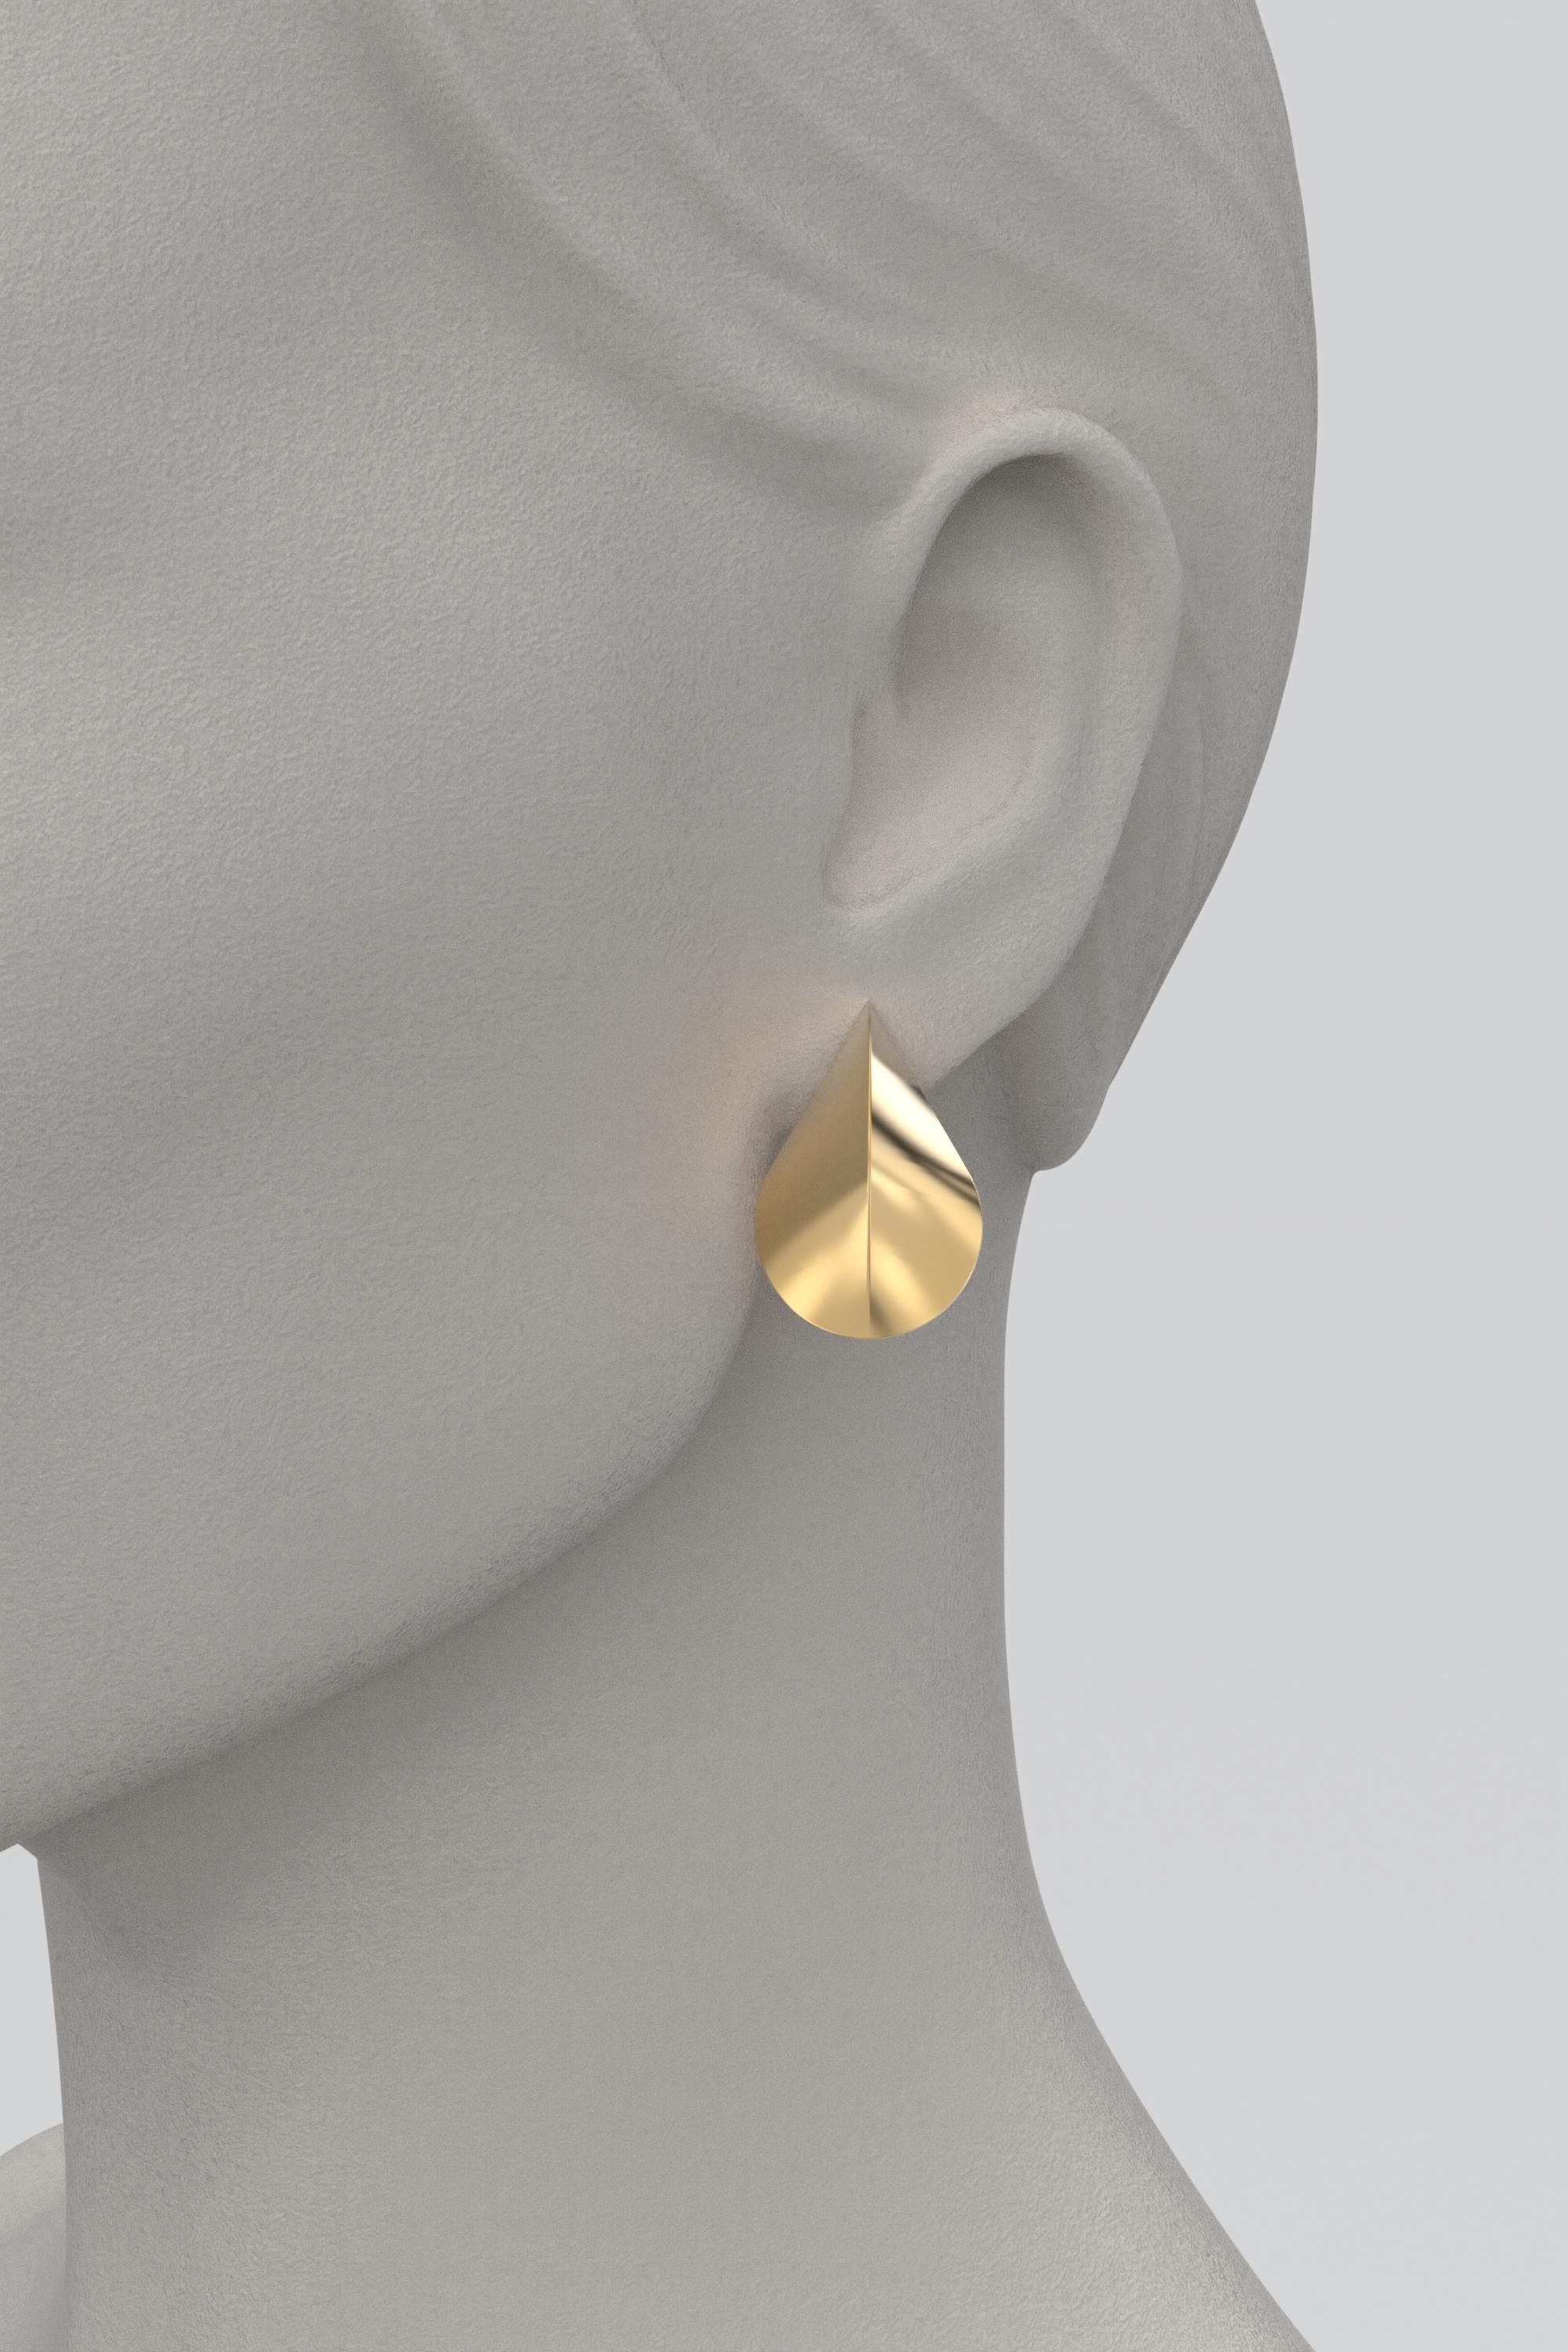 Women's Italian 18k Gold Earrings, Modern Elegant Earrings by Oltremare Gioielli For Sale